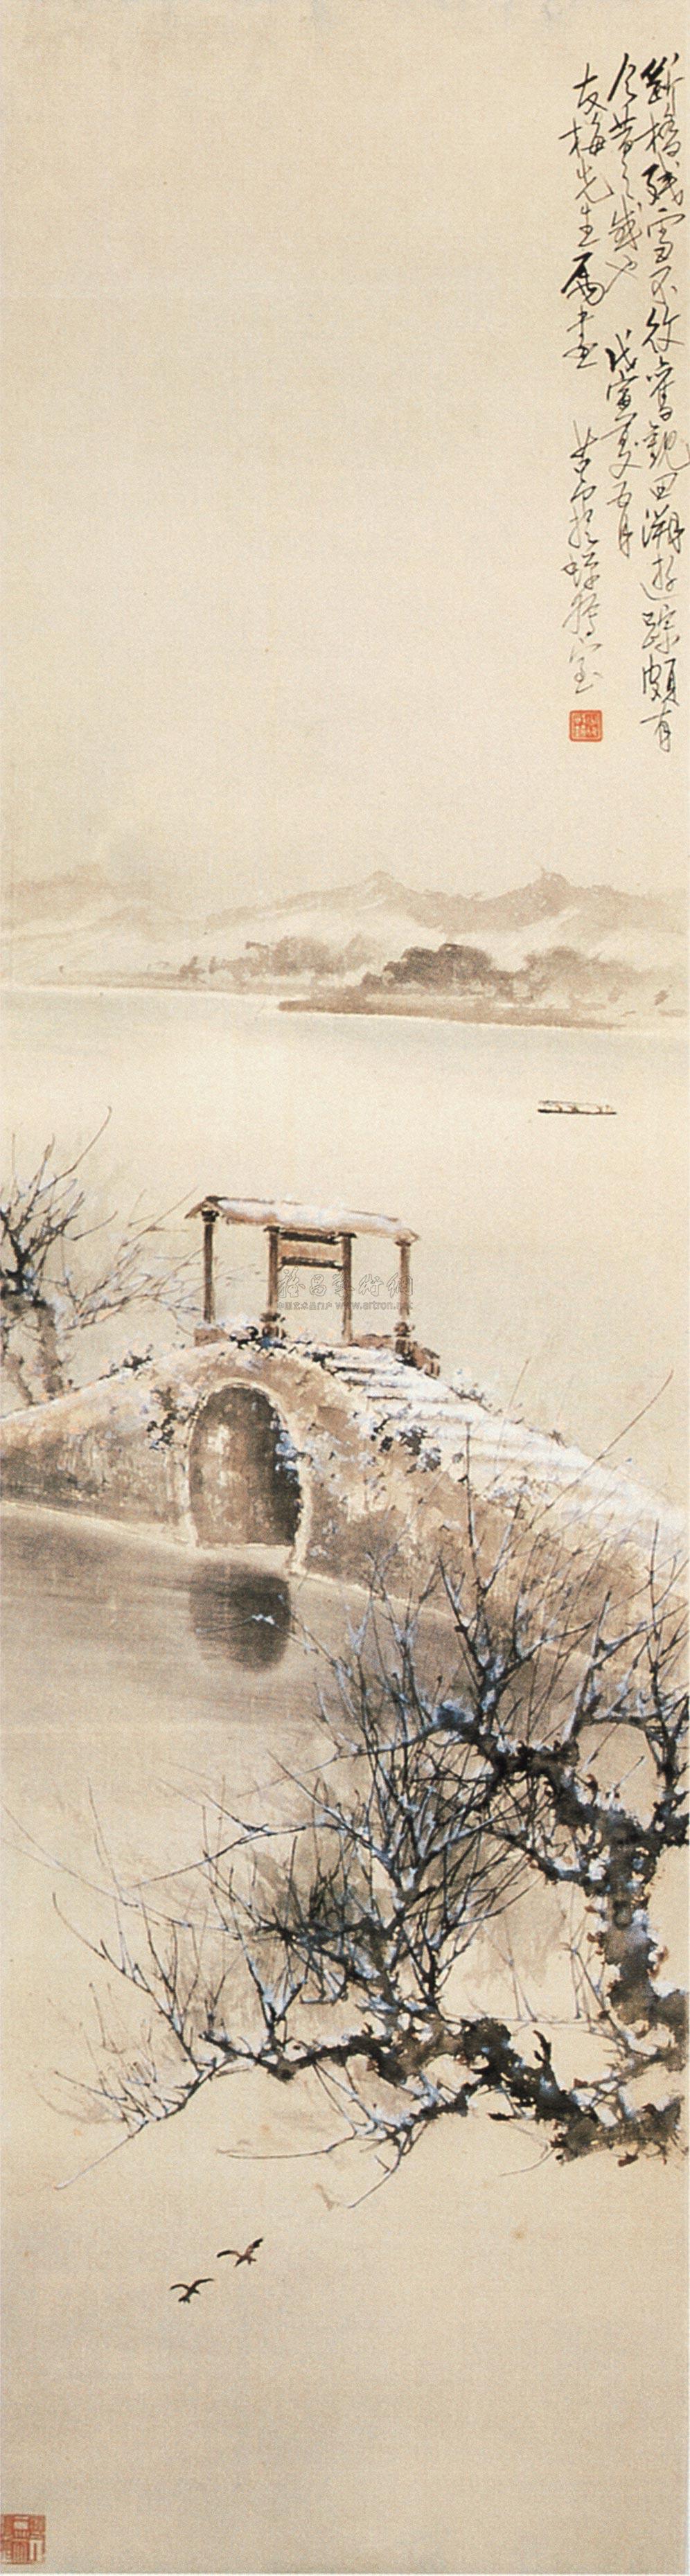 断桥残雪手绘图片